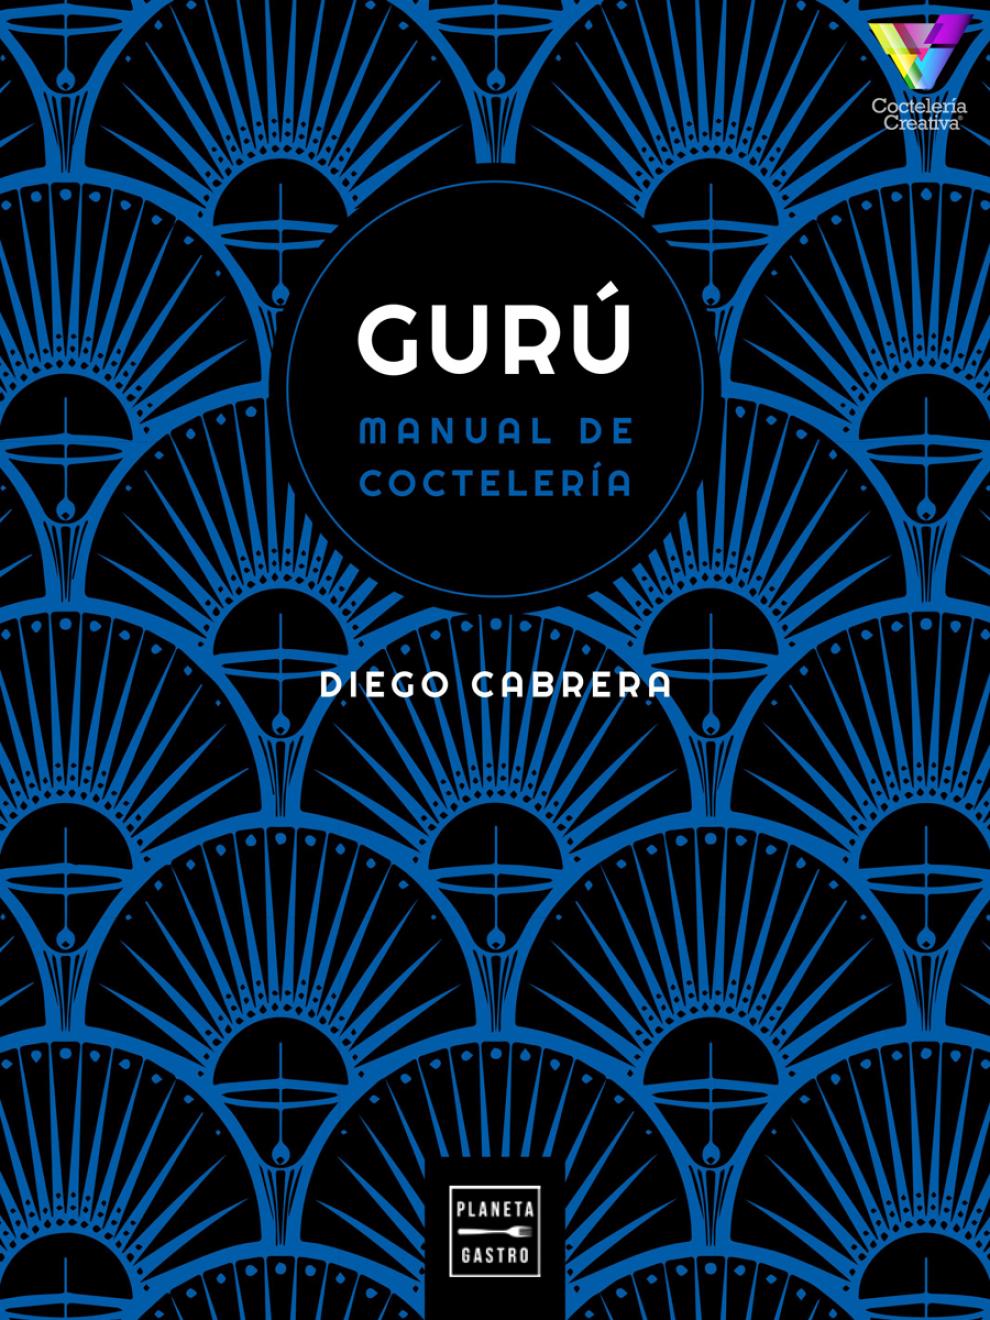 Portada del libro "Gurú. Manual (Multisensorial) de Coctelería" de Diego Cabrera